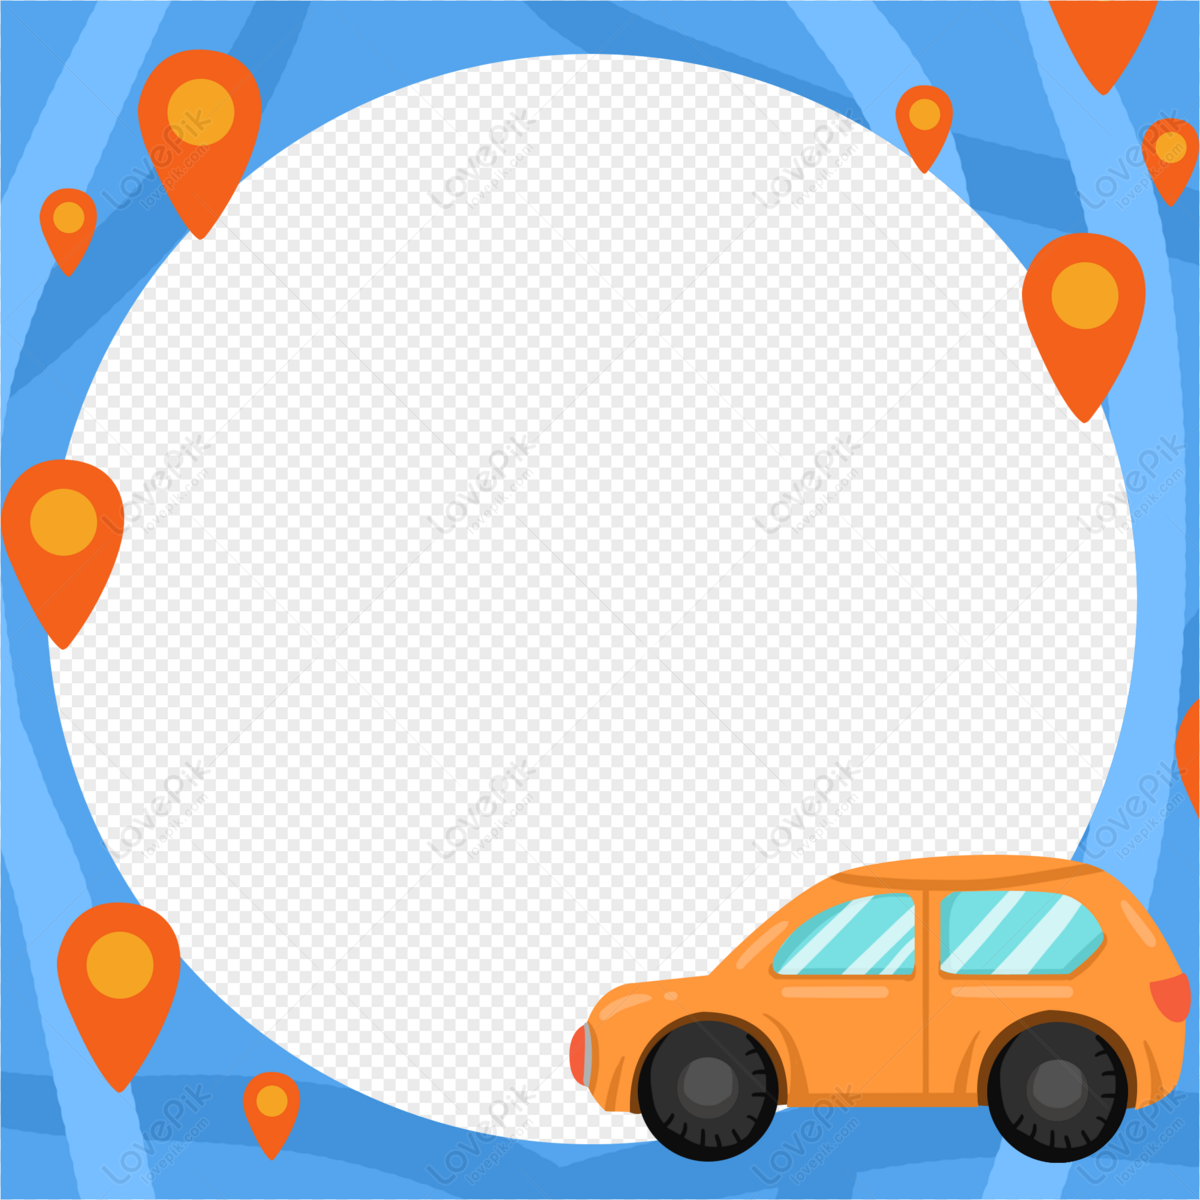 Xe vẽ tay tự lái tour - PNG miễn phí: Có một số hình ảnh xe vẽ tay tự lái miễn phí được cung cấp cho các thiết kế ban đầu với tài nguyên dễ dàng tùy chỉnh tùy theo sở thích của bạn. Hãy xem chi tiết hình ảnh liên quan để làm cho các dự án của bạn nổi bật hơn.